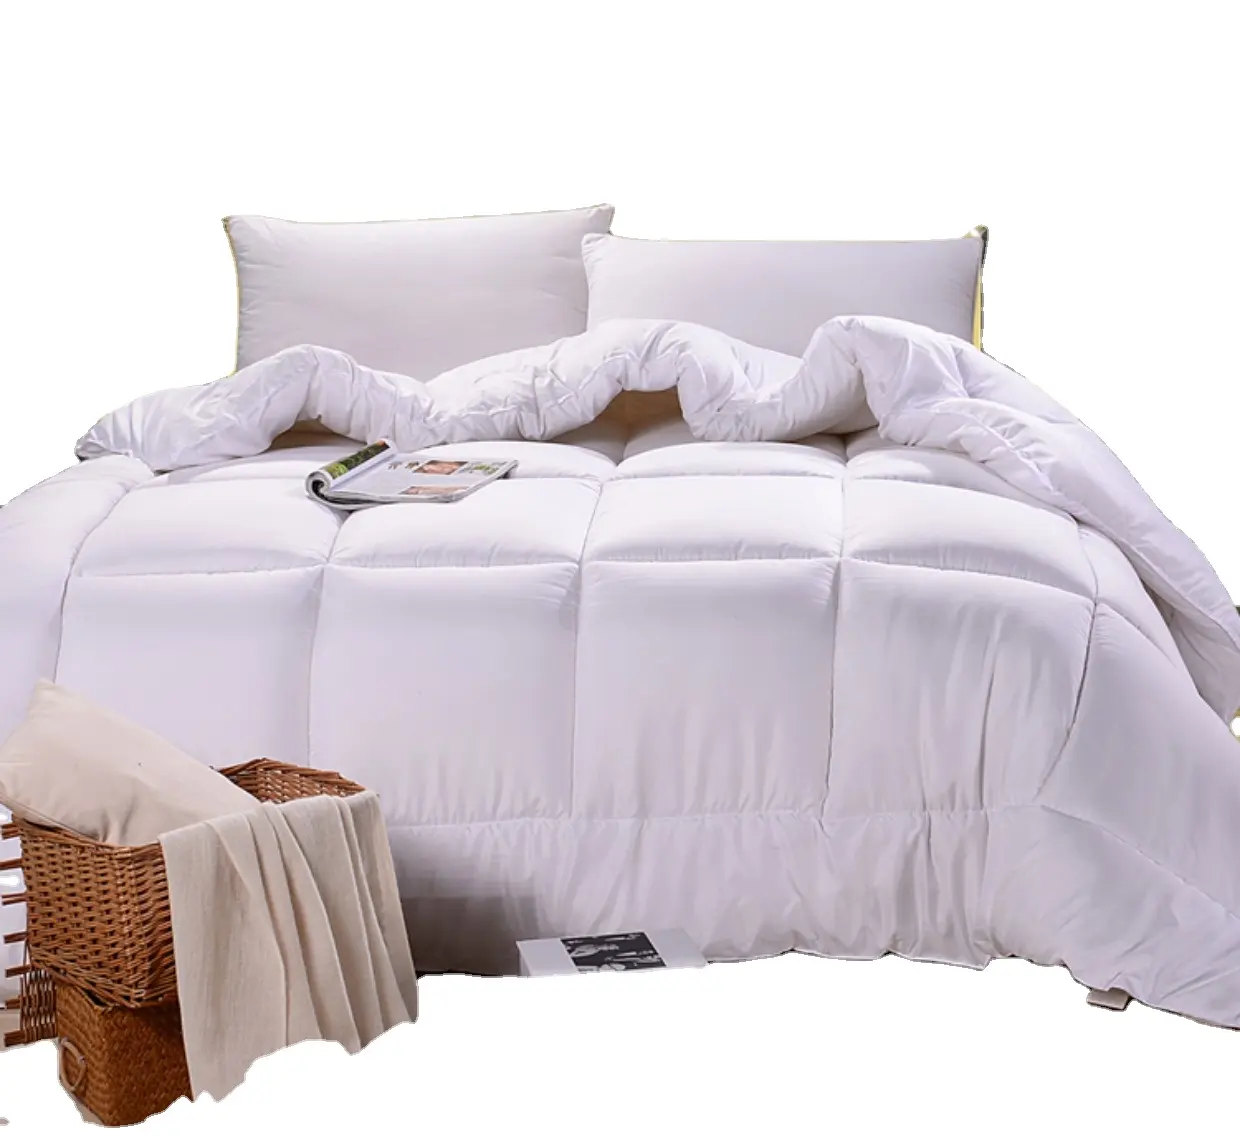 Four Seasons 5 звездочный отель постельные принадлежности для разлива вниз одеяло женские туфли с отделкой белыми перьями, пуховое одеяло